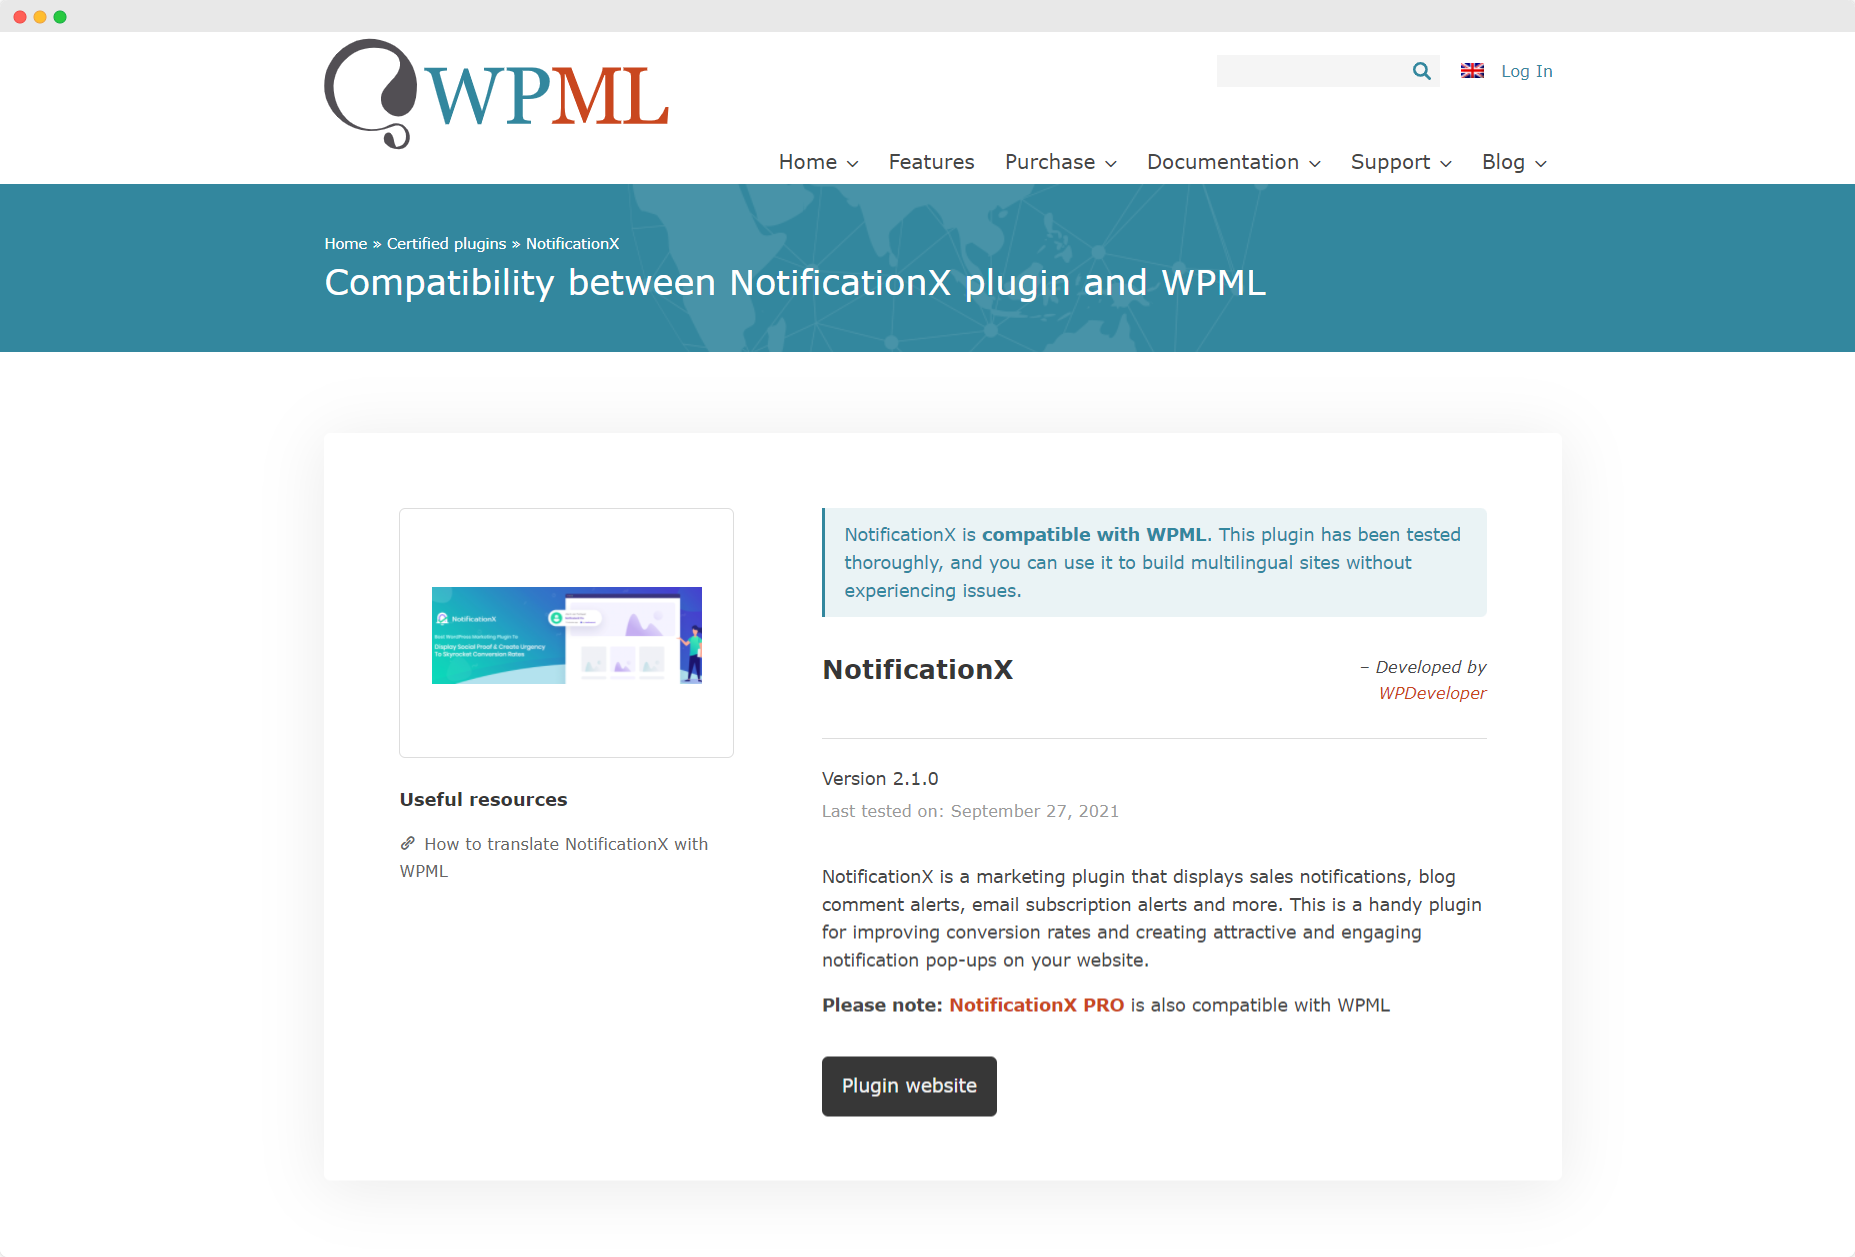 [NOVO] NotificationX agora é compatível com WPML 1